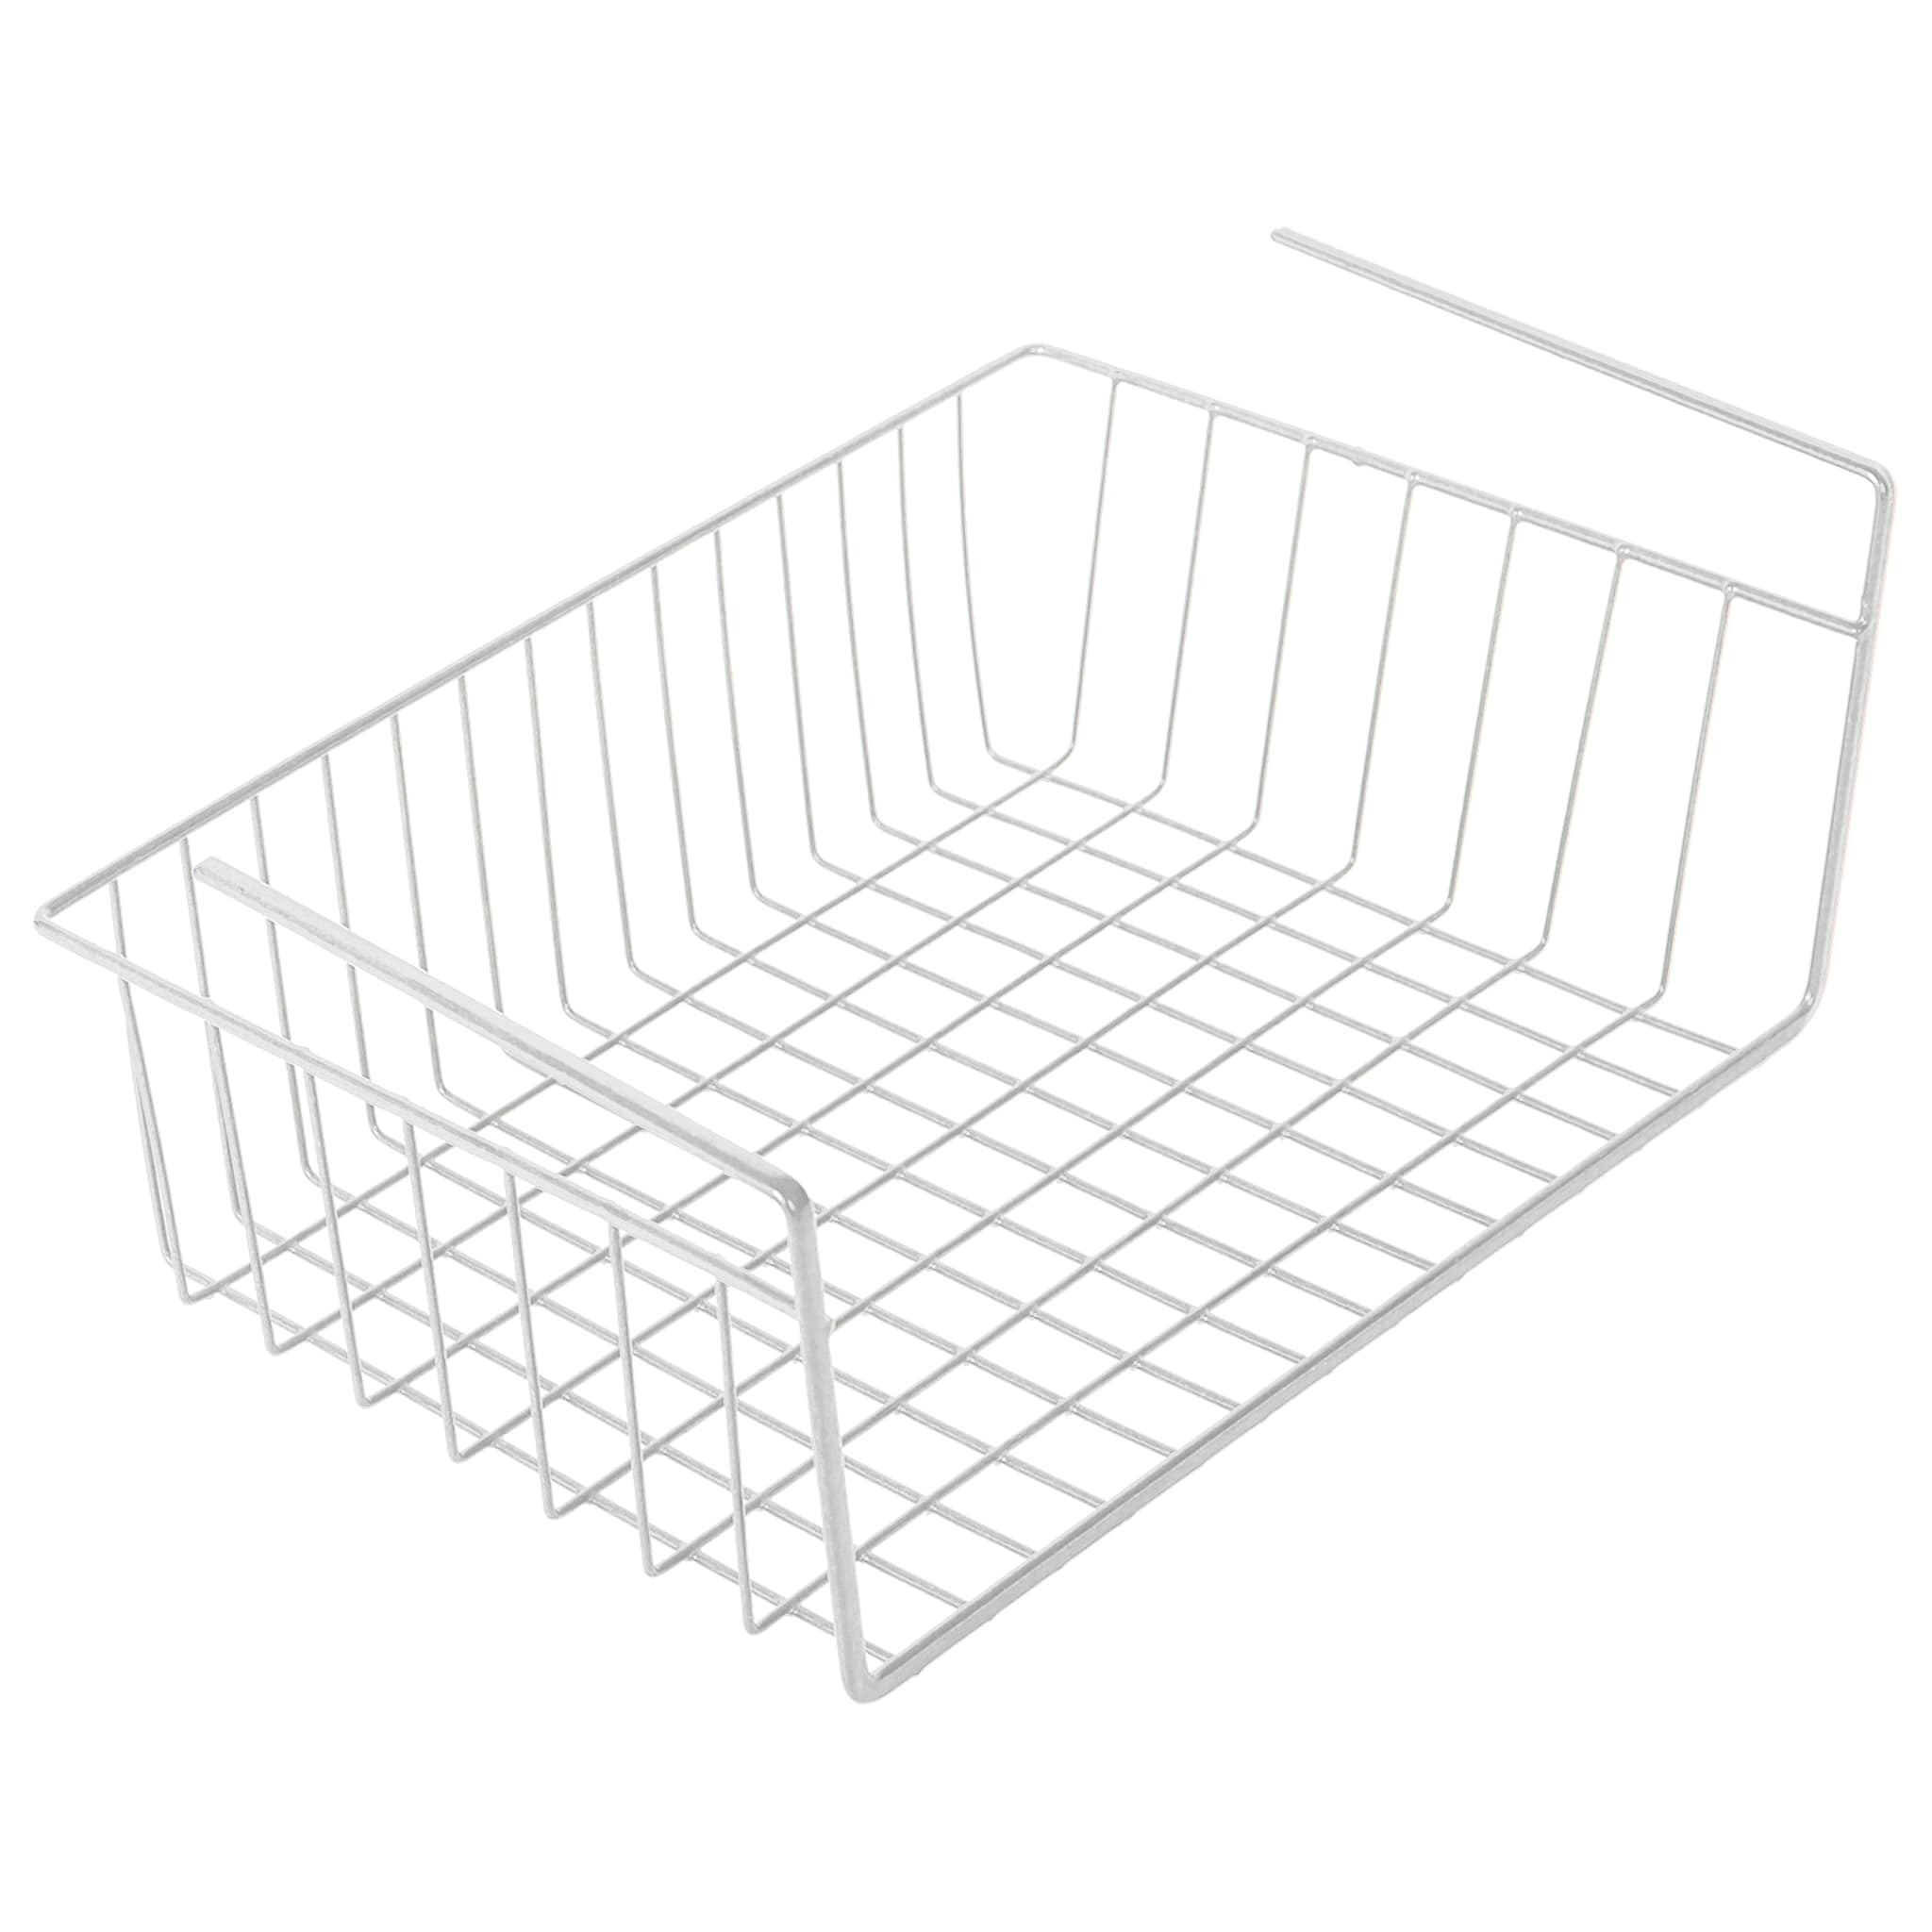 Undershelf Storage Basket 16 | Smart Design Kitchen